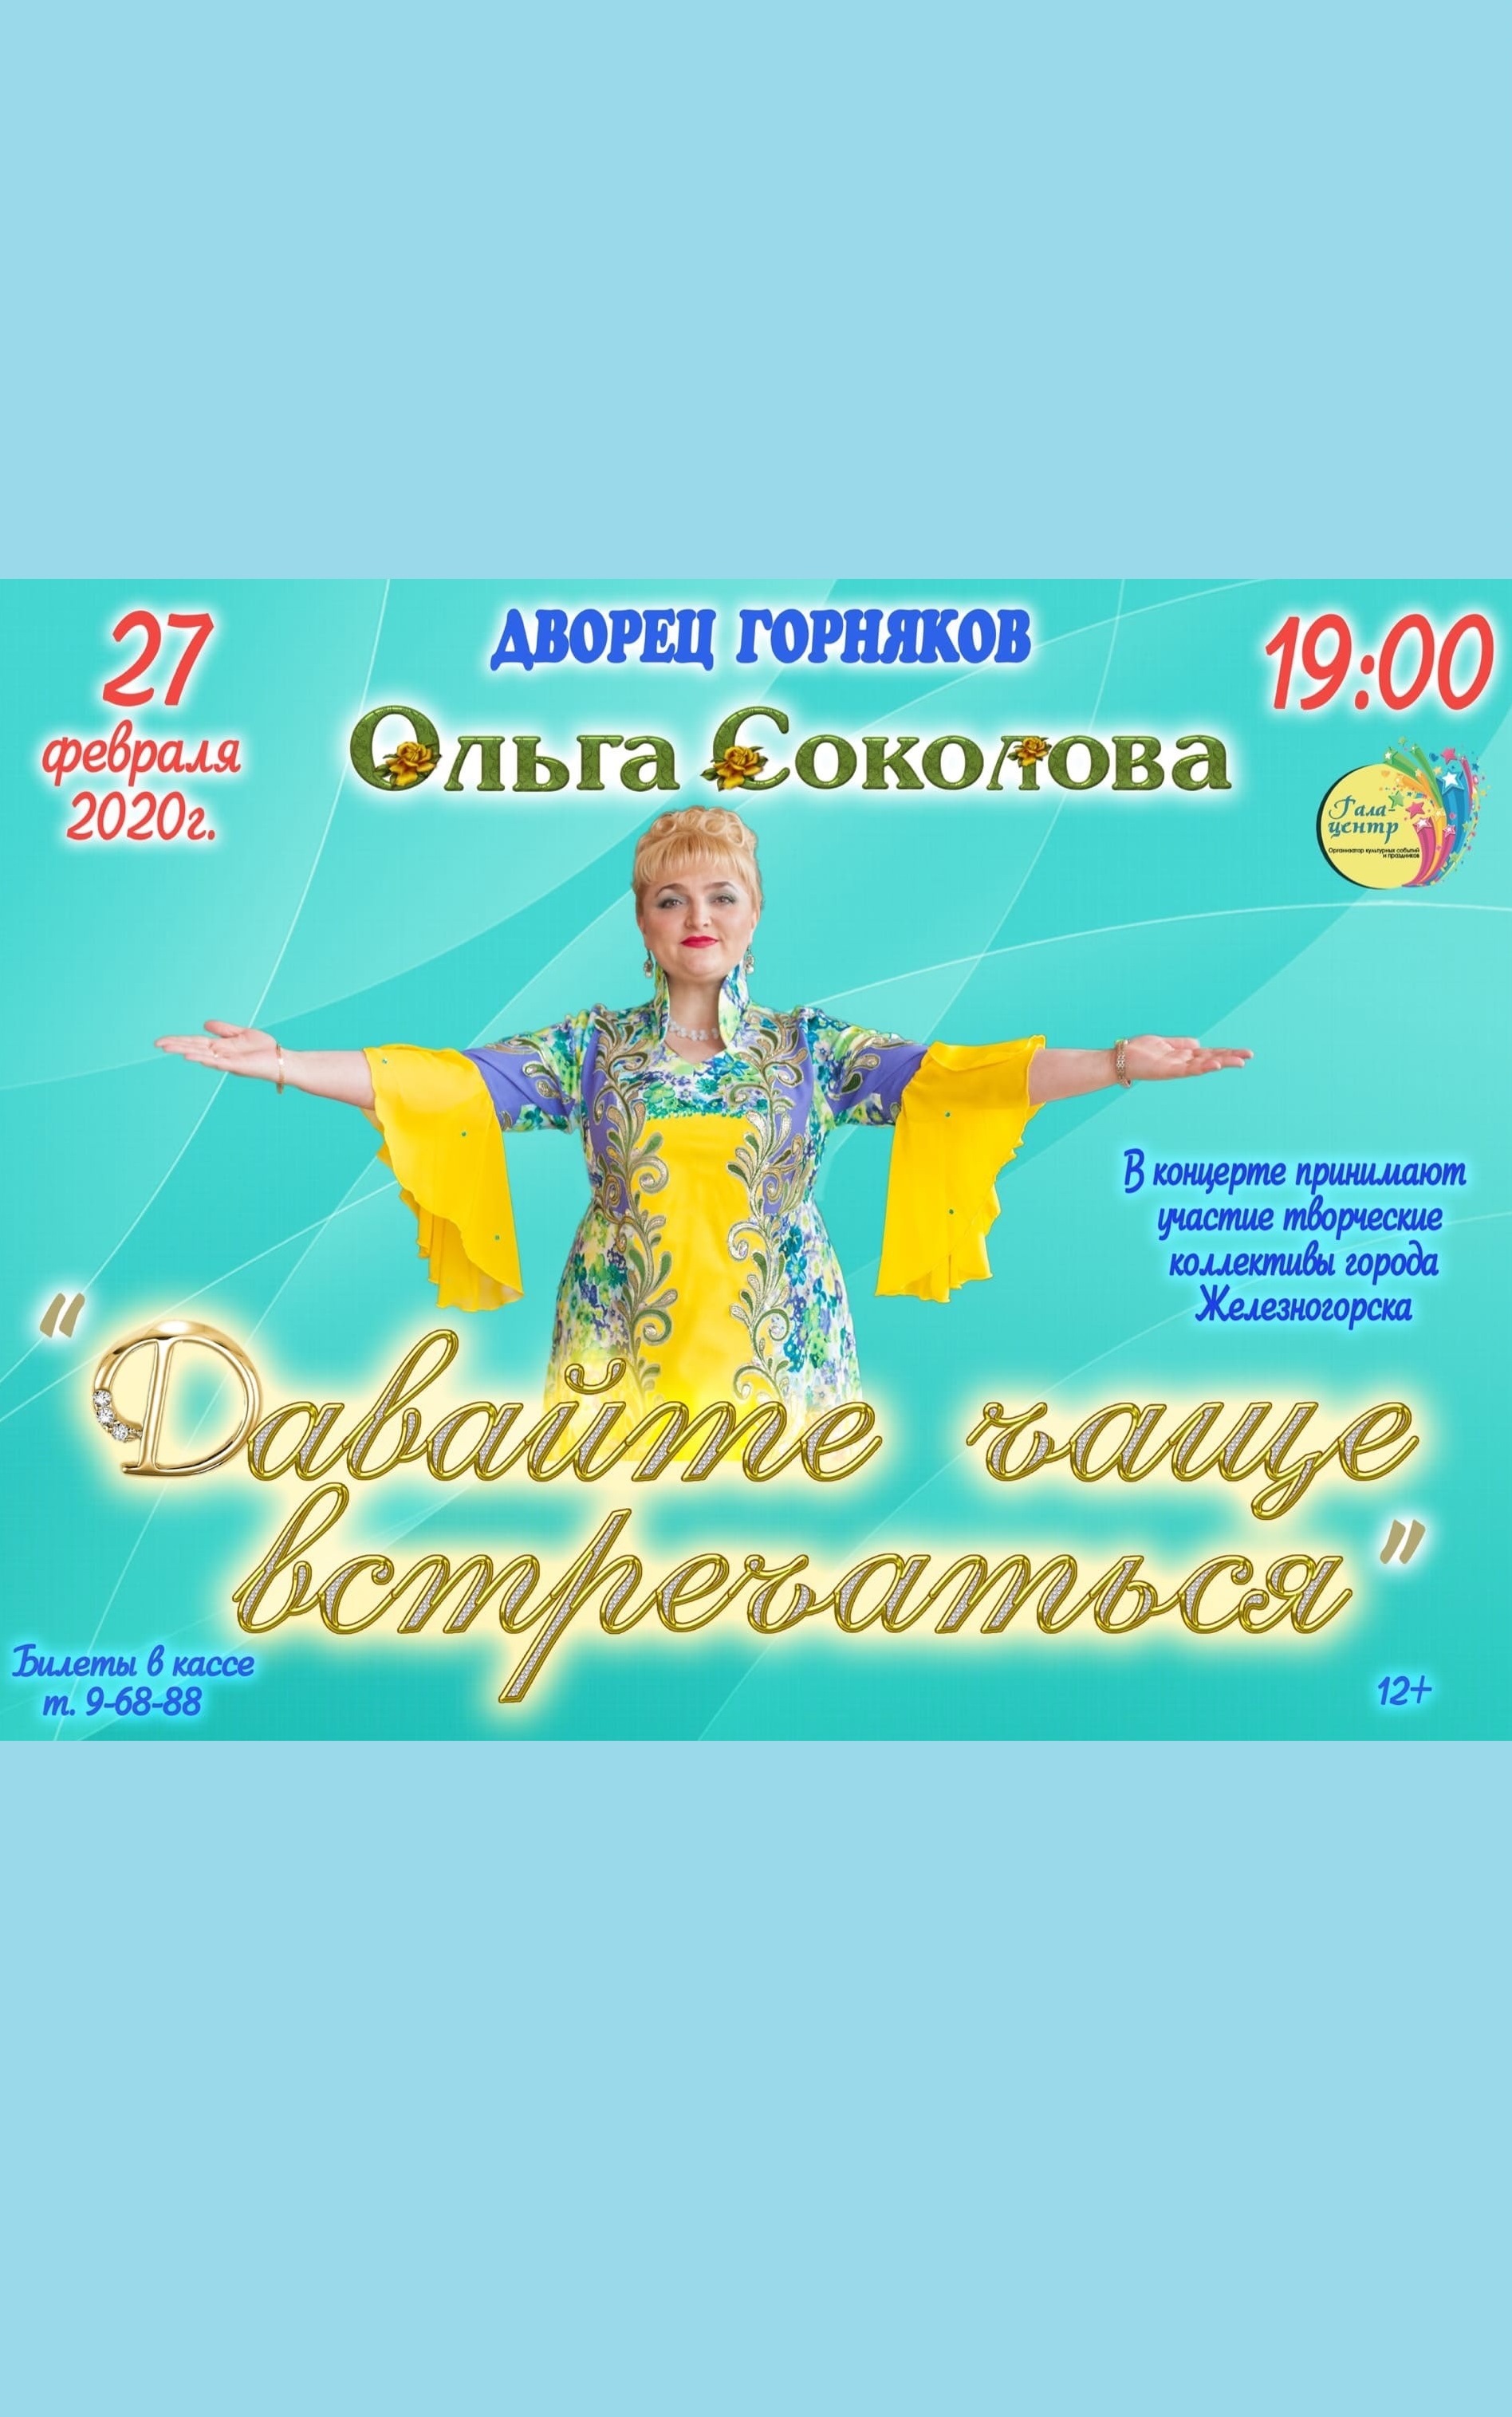 Концертная программа Ольги Соколовой «Давайте чаще встречаться»